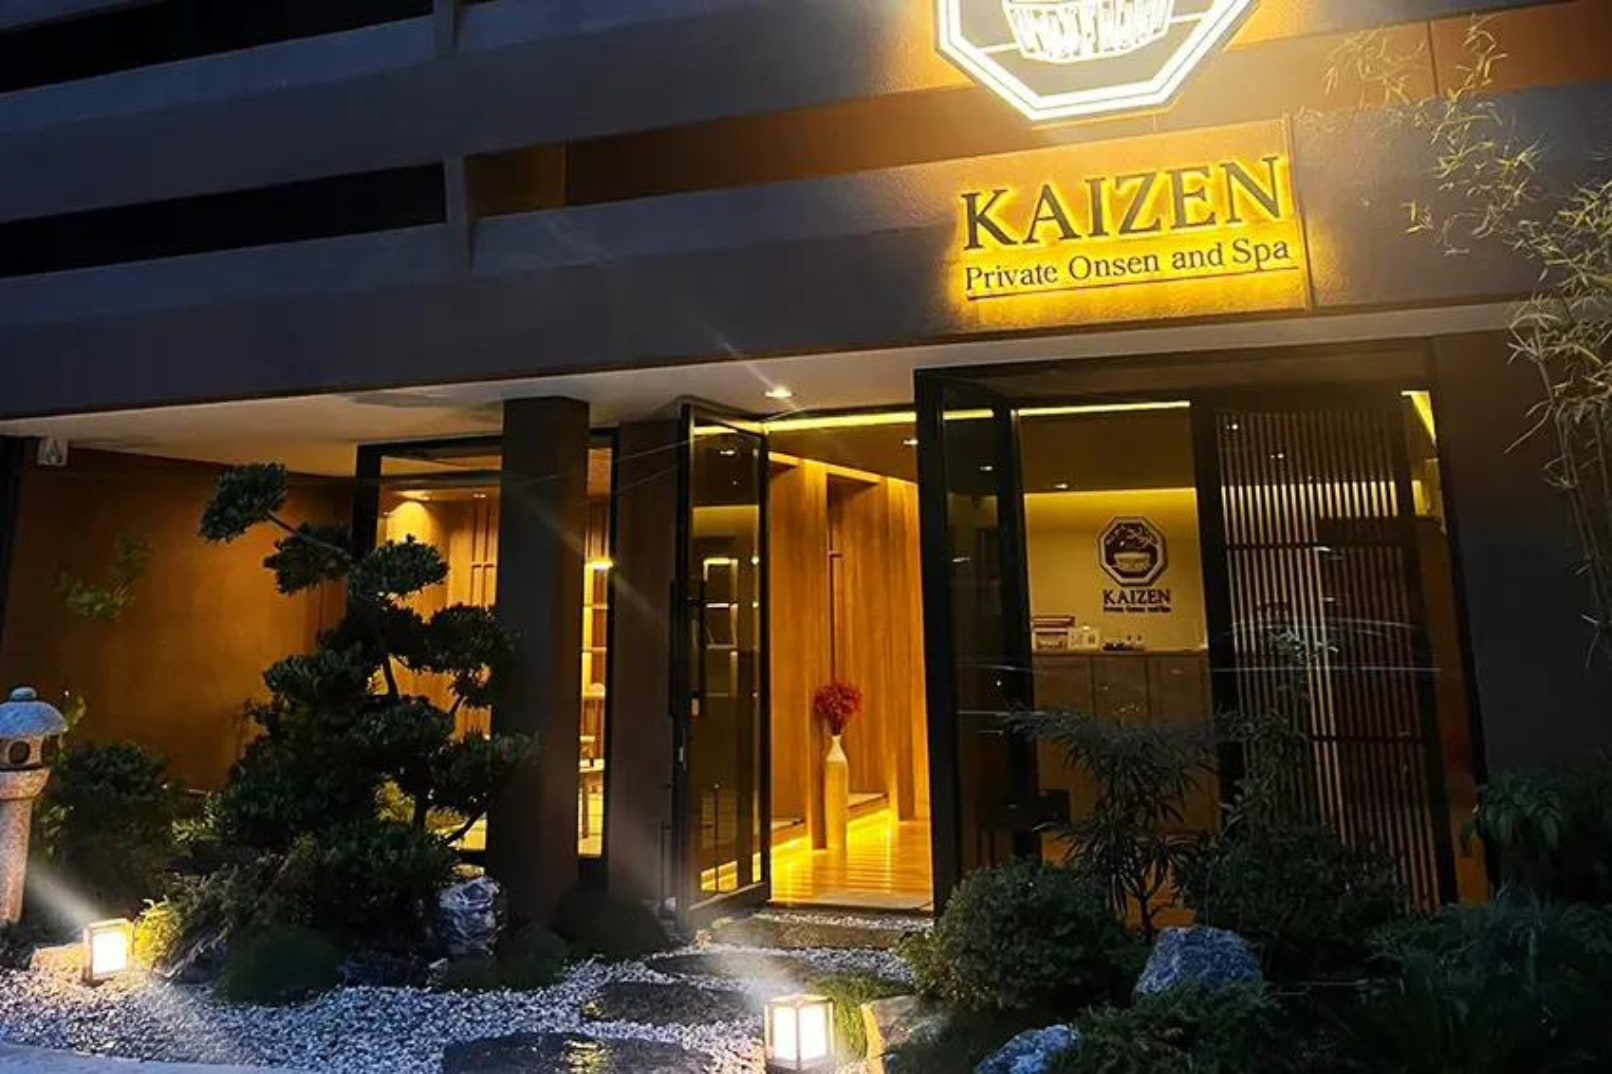 曼谷Kaizen Private Onsen and Spa 水療體驗